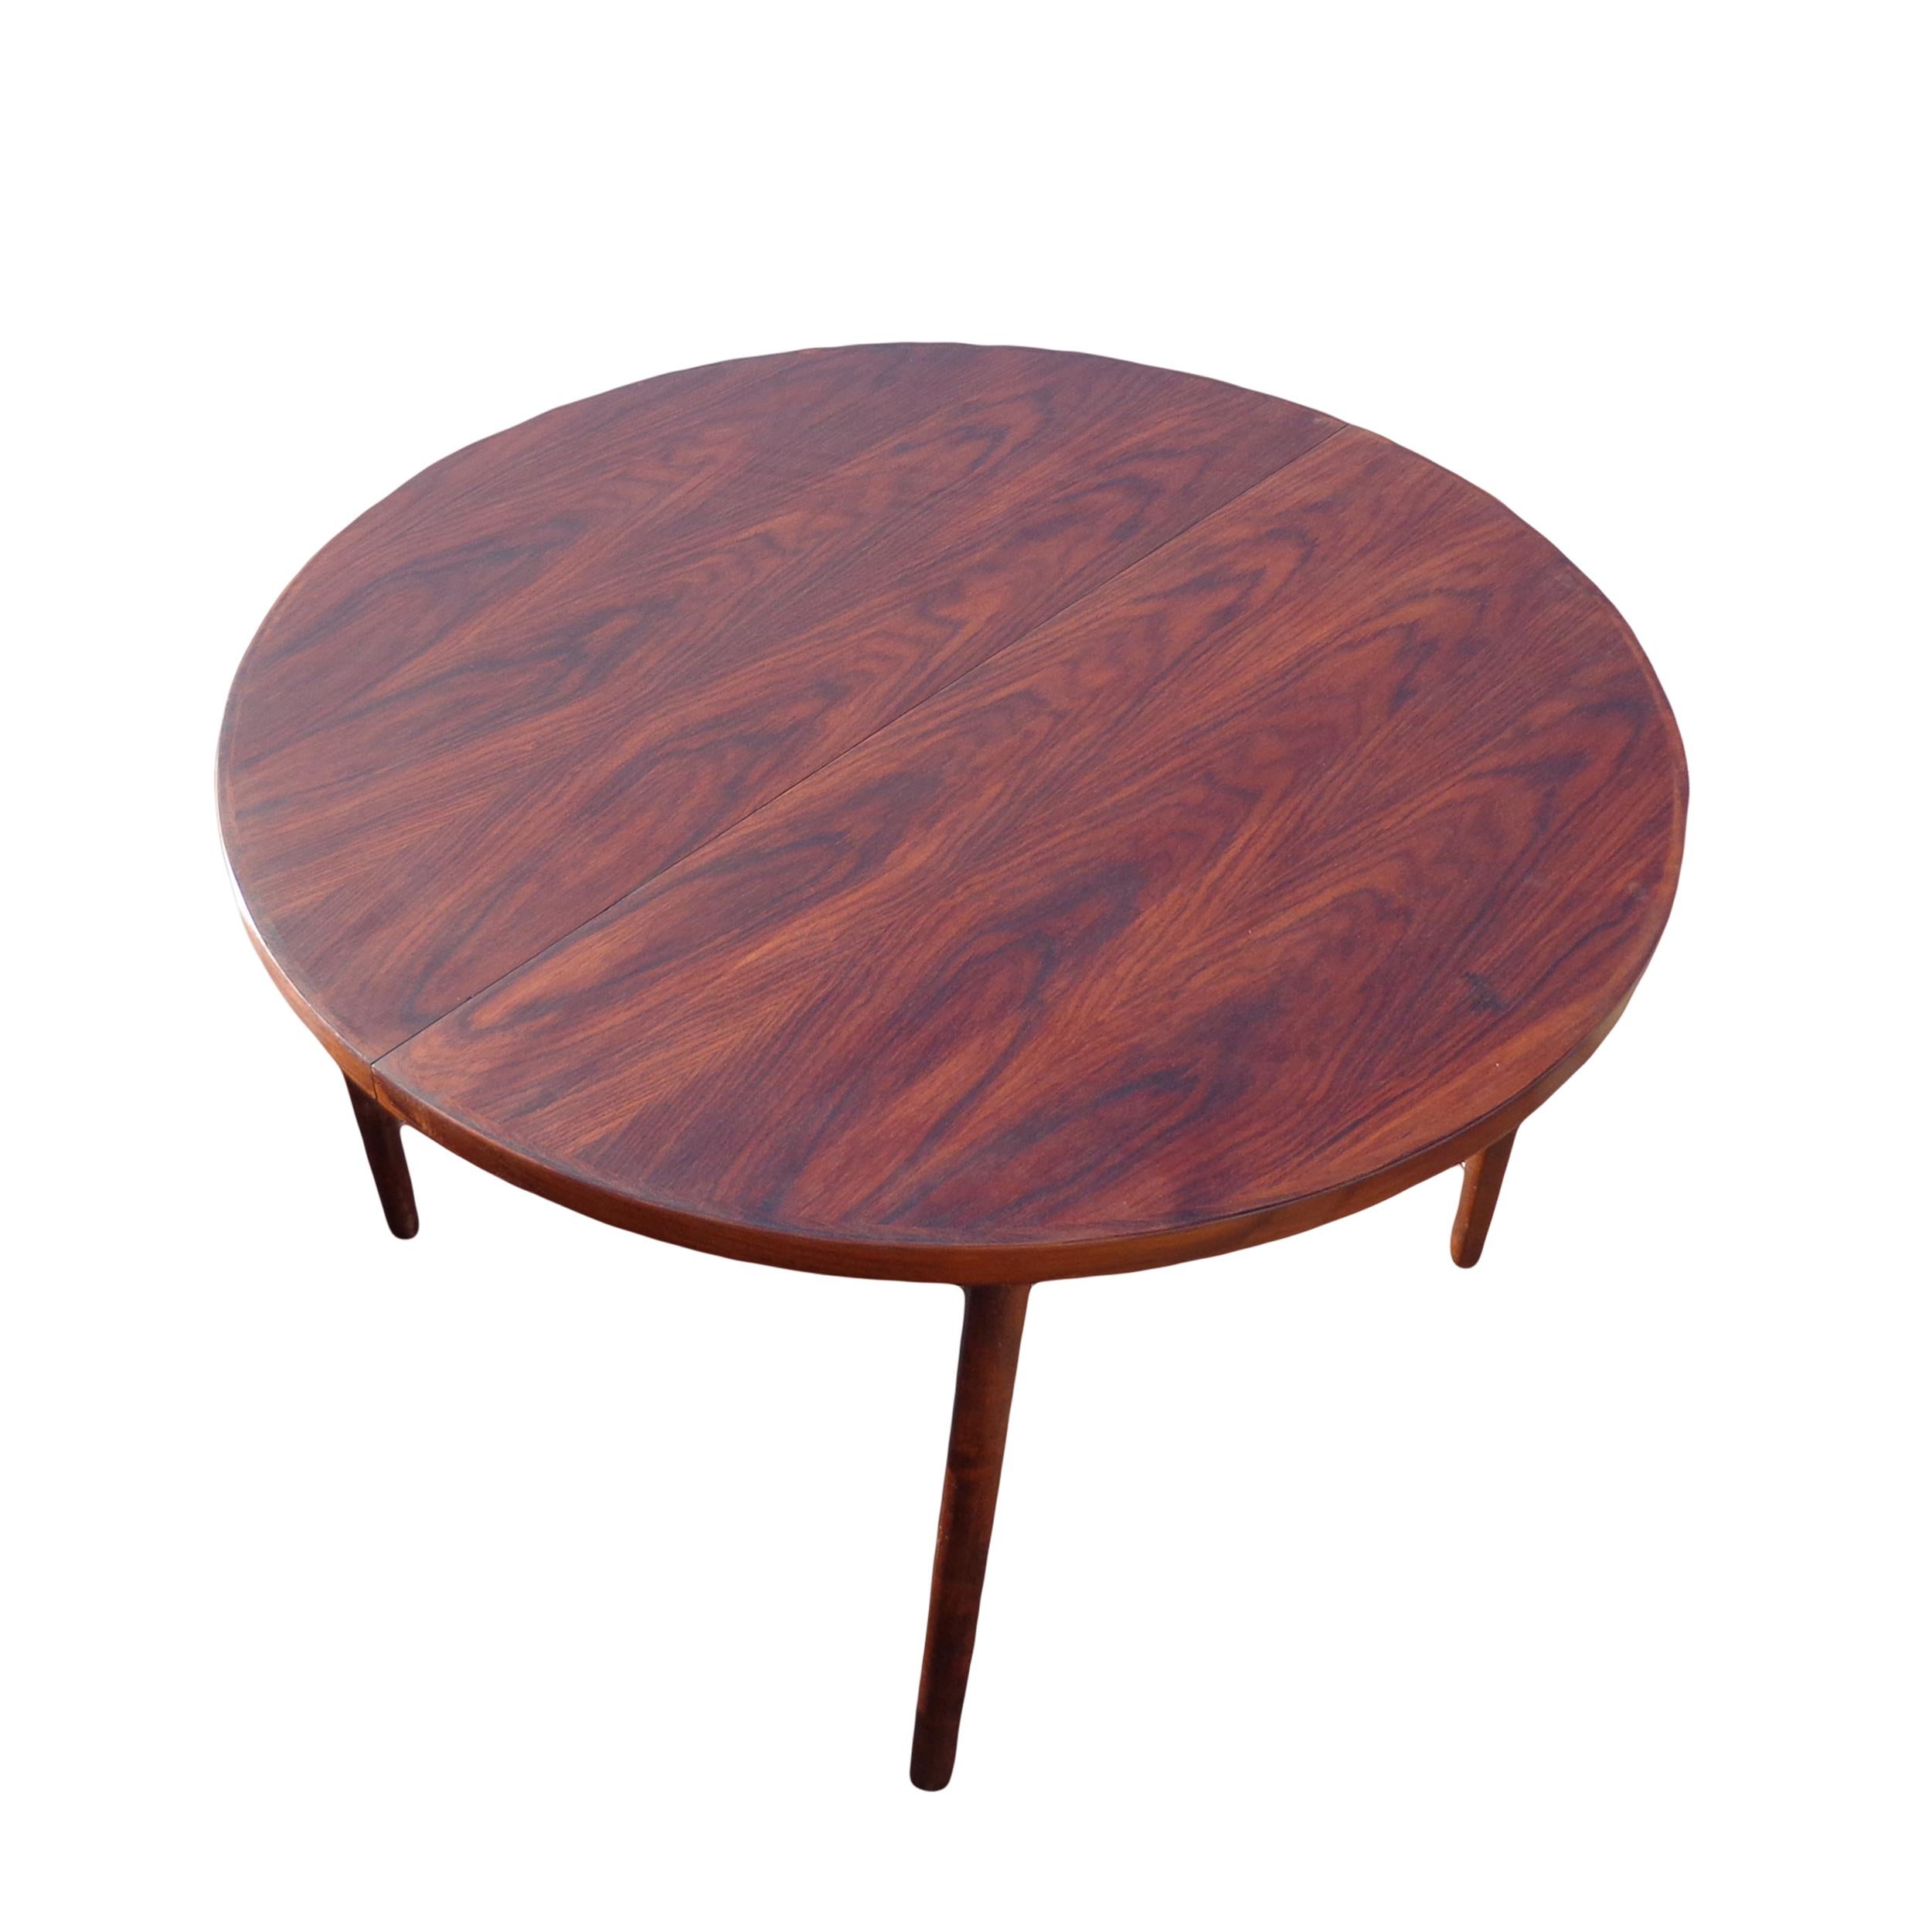 Table de salle à manger extensible en bois de rose scandinave de 87 pouces

Superbe table en bois de rose avec 2 plateaux
 
S'étend de 47,5